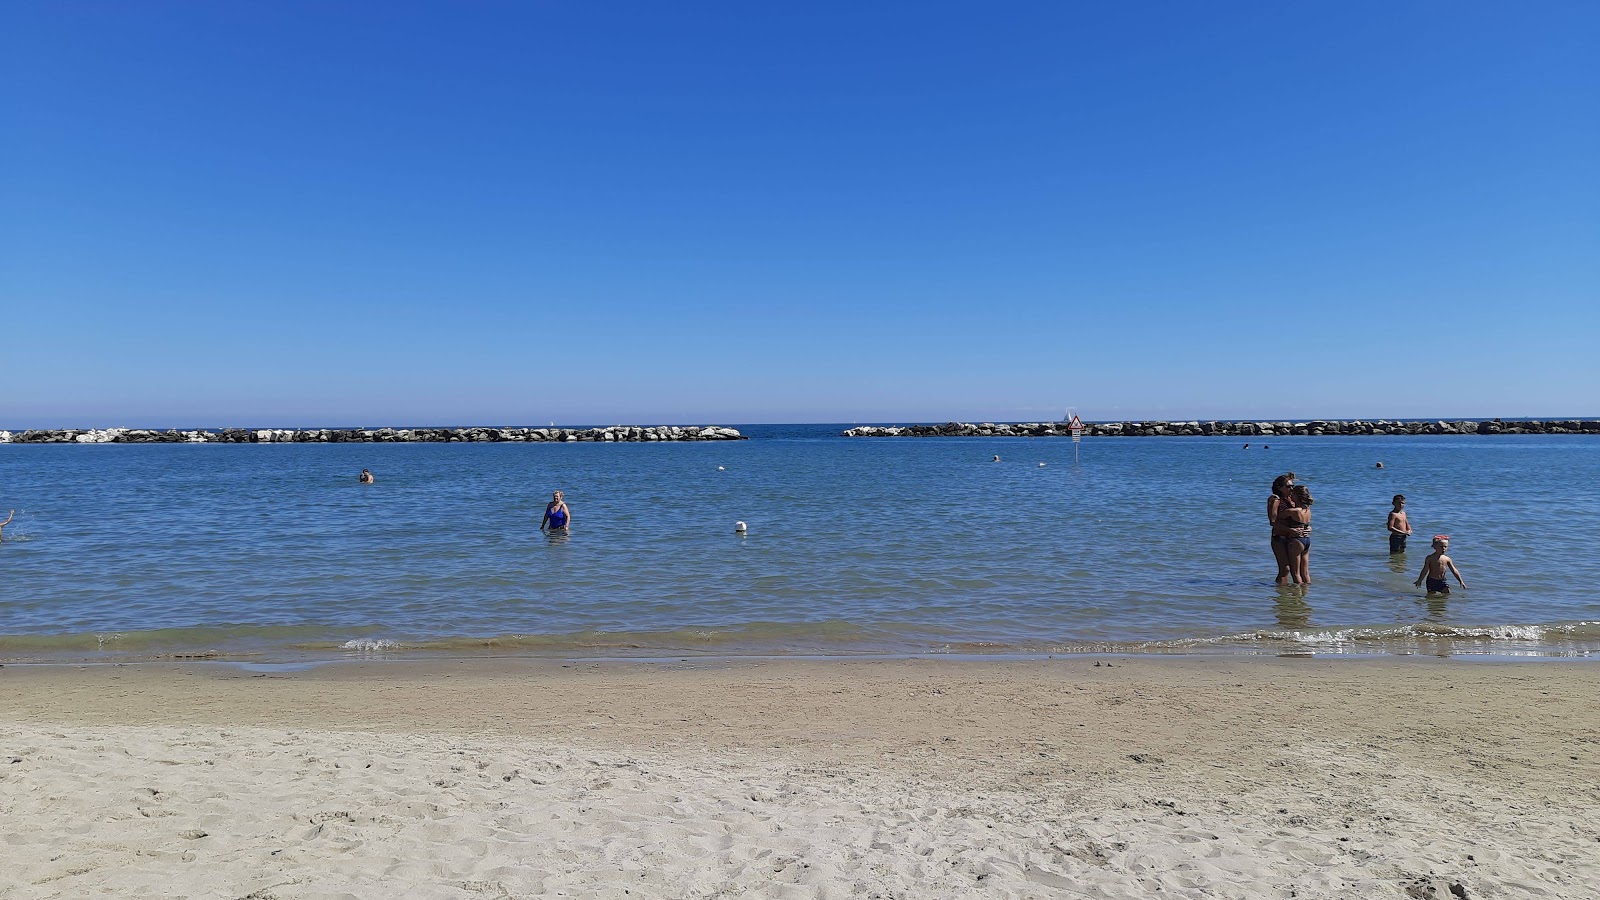 Fotografie cu Spiaggia di Gatteo Mare cu plajă spațioasă